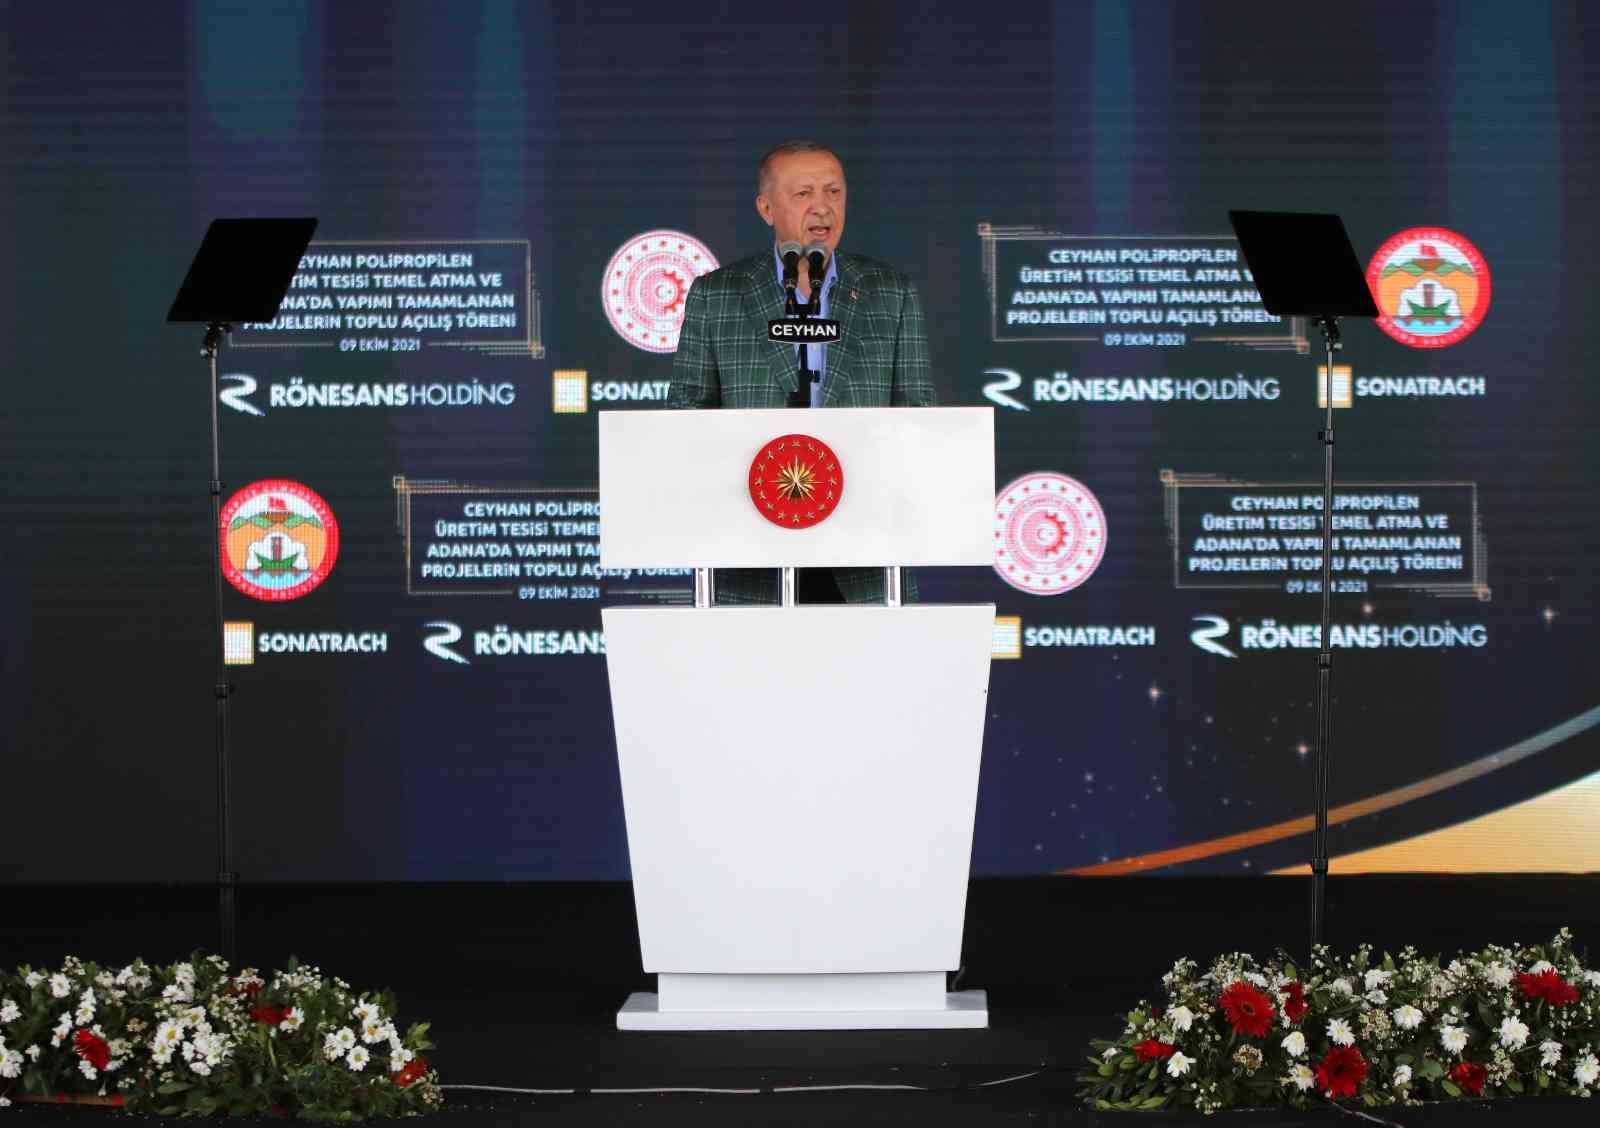 Cumhurbaşkanı Erdoğan: “Türkiye’ye güvenip yatırım yapan pişman olmaz” #adana